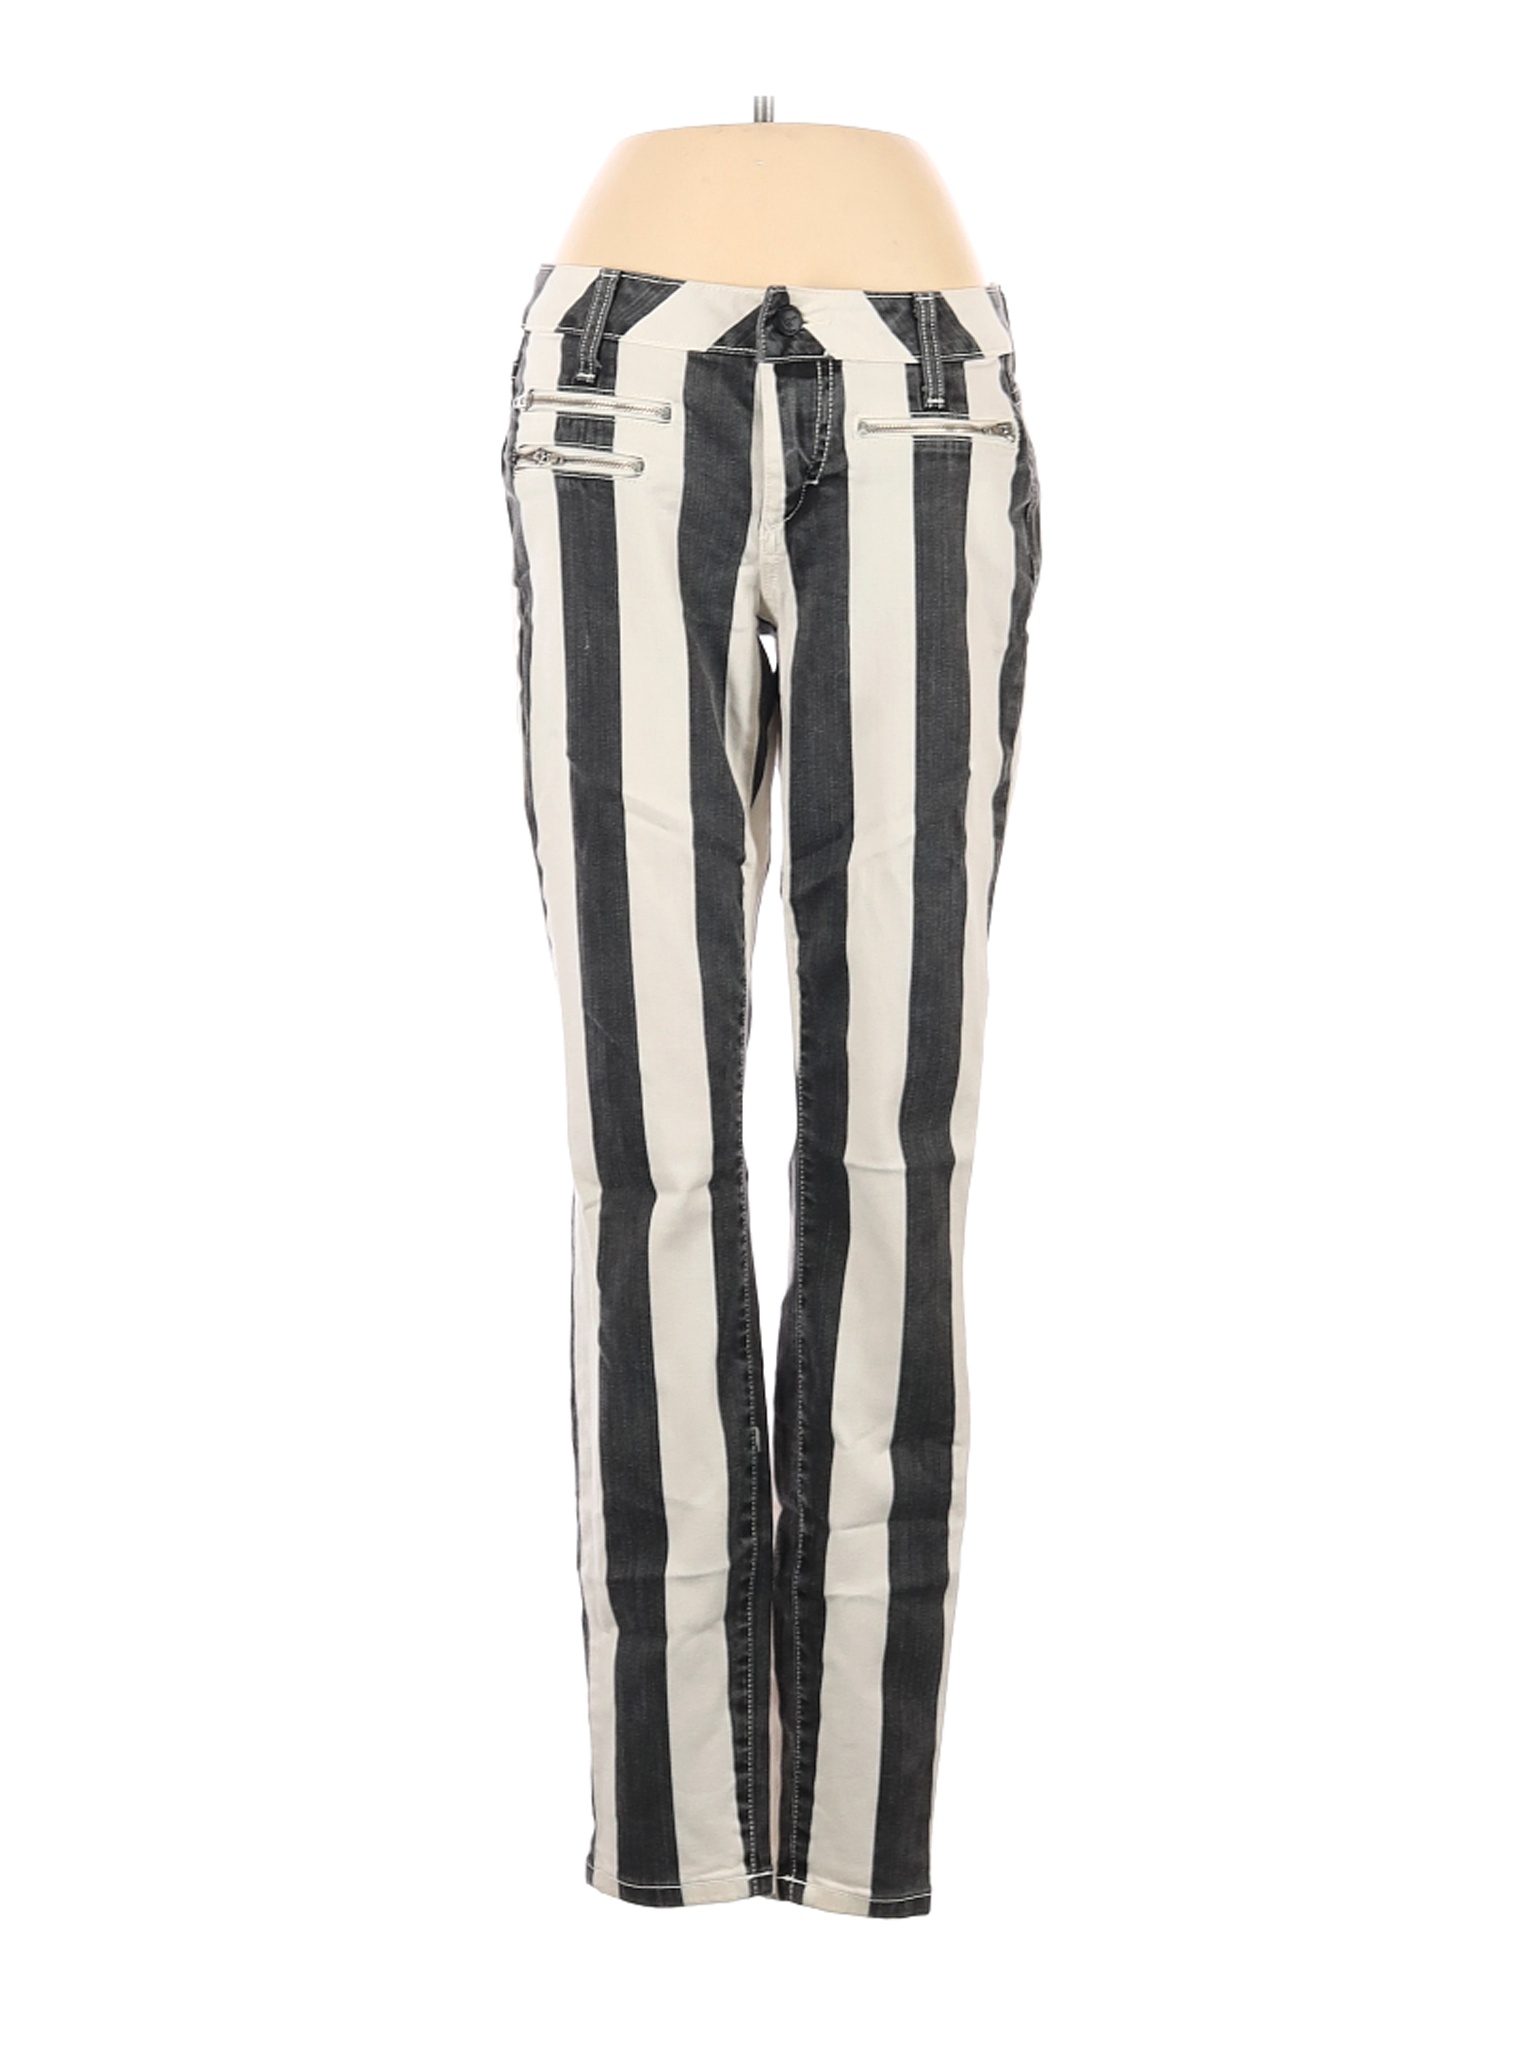 Bebe Stripes Black Jeans 27 Waist - 74% off | thredUP